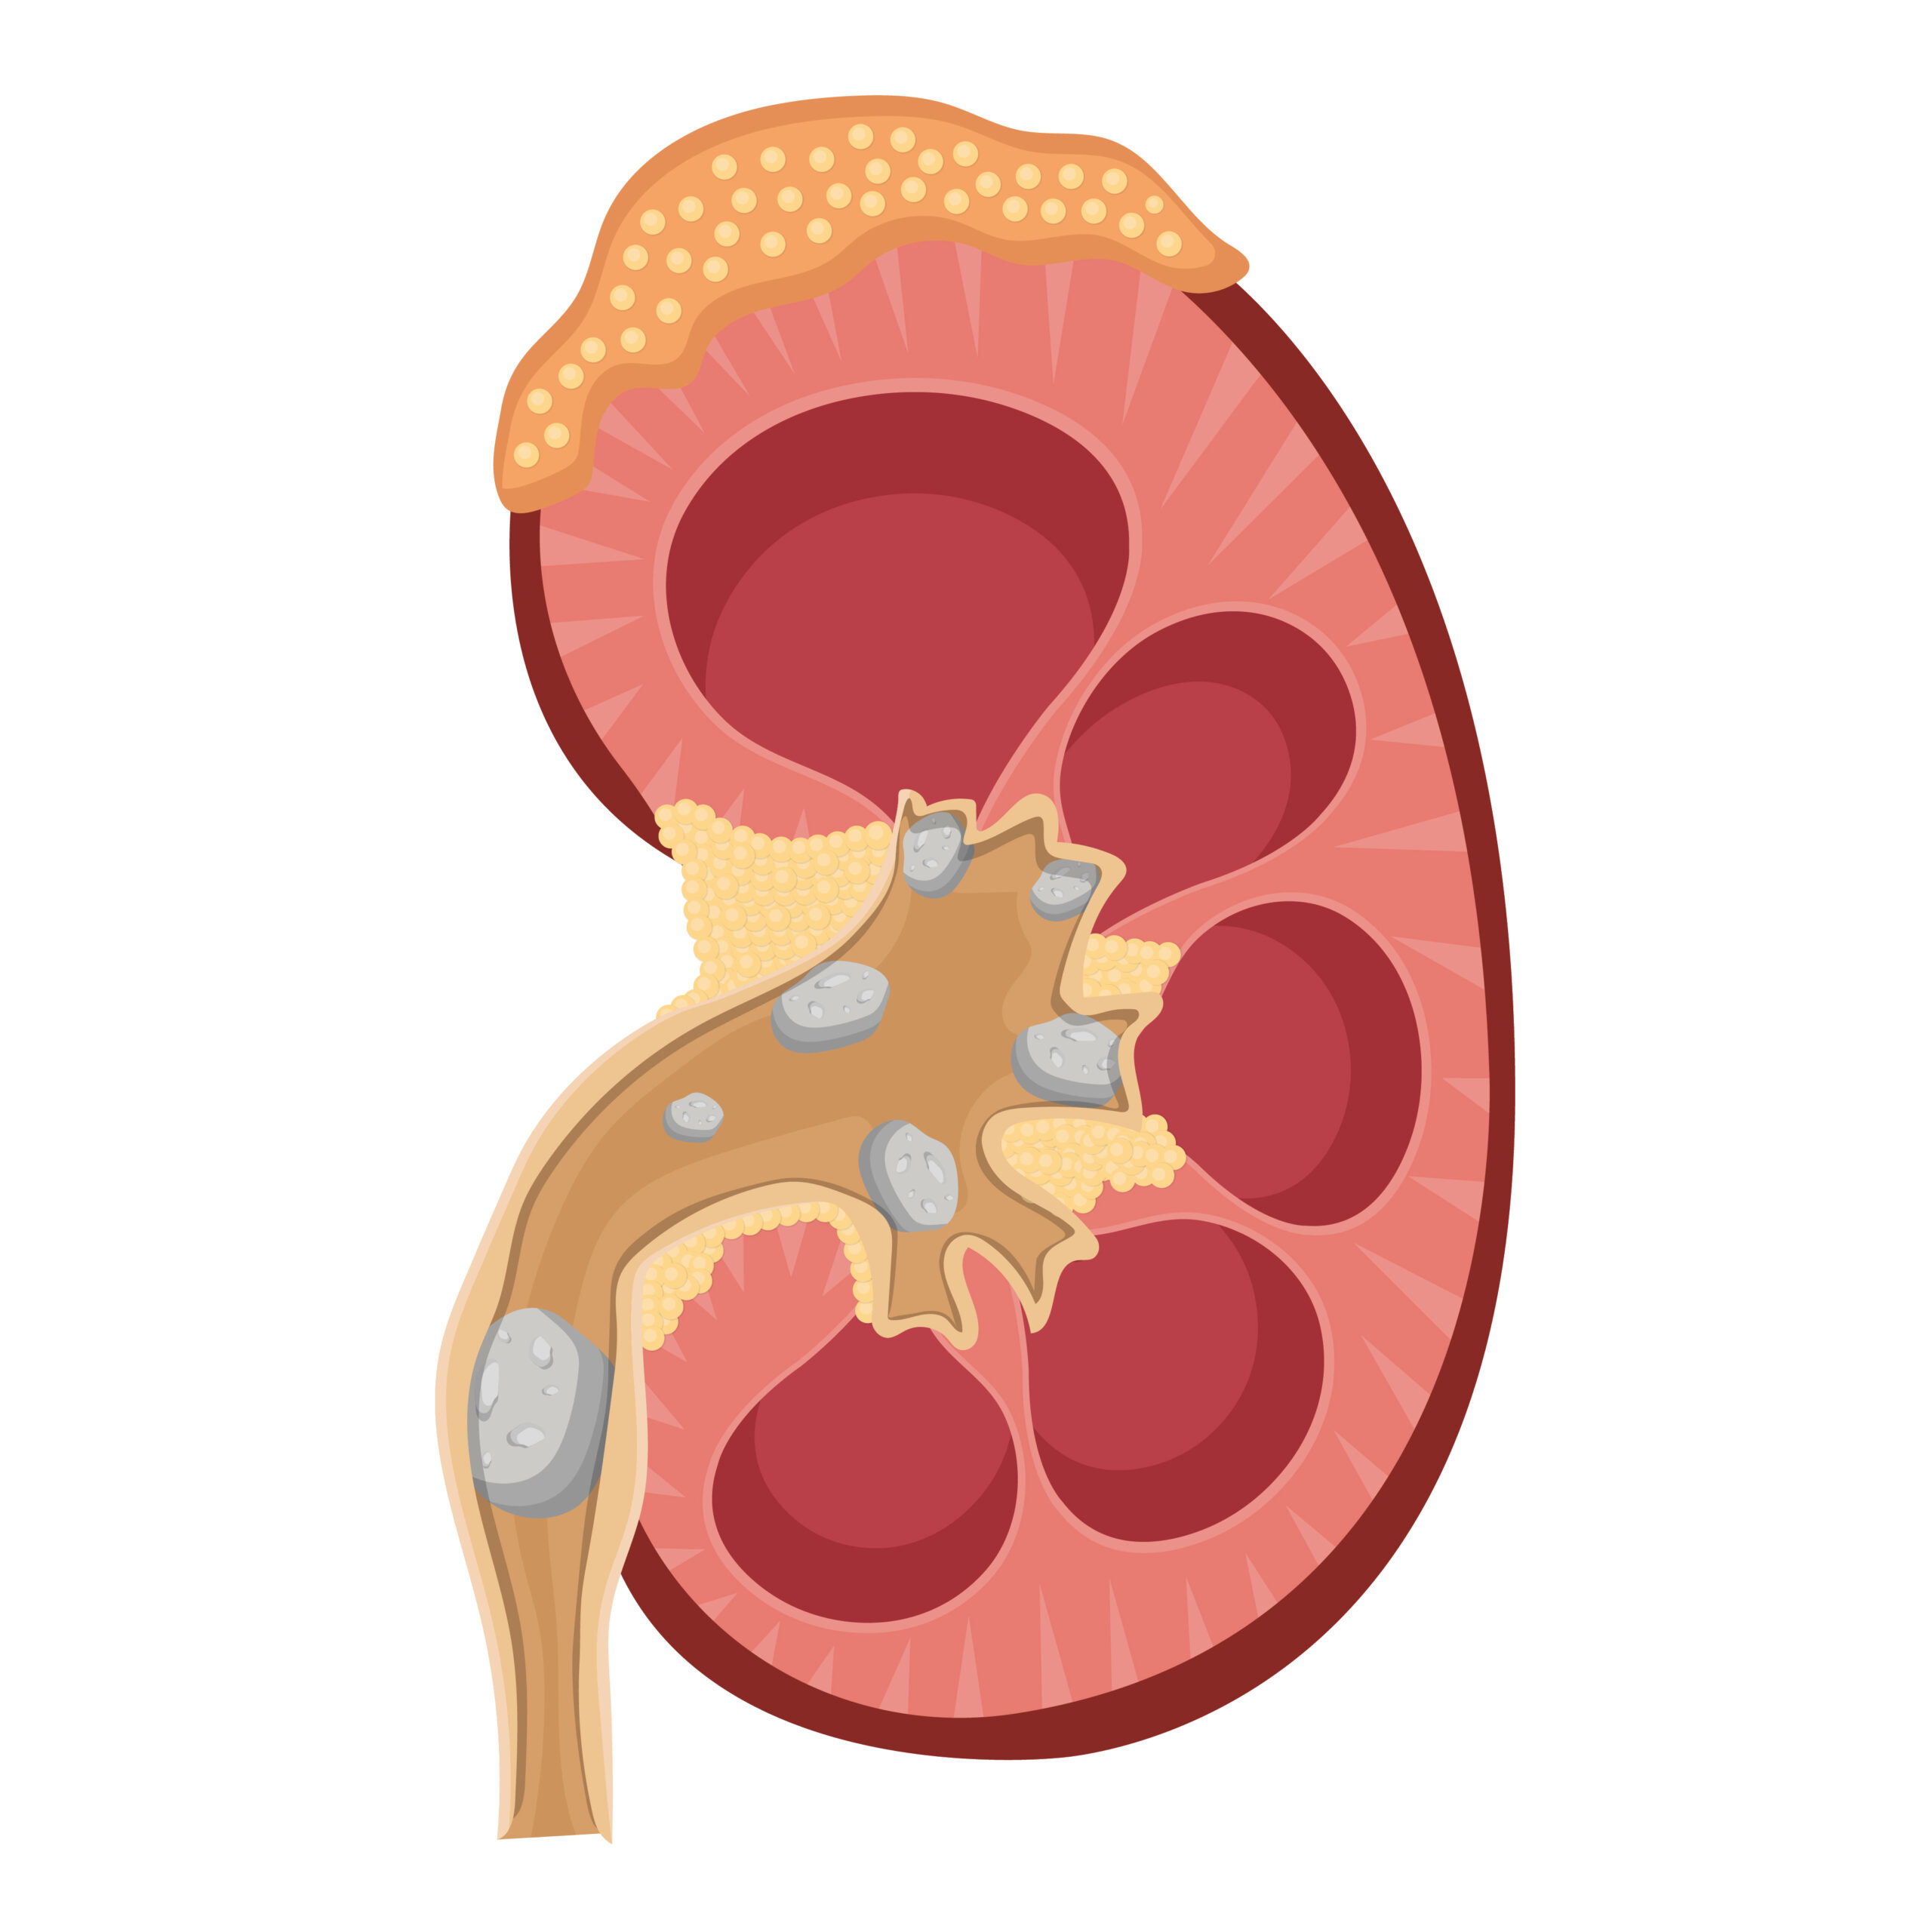 Urologia Goiânia - 5 curiosidades sobre pedras nos rins!